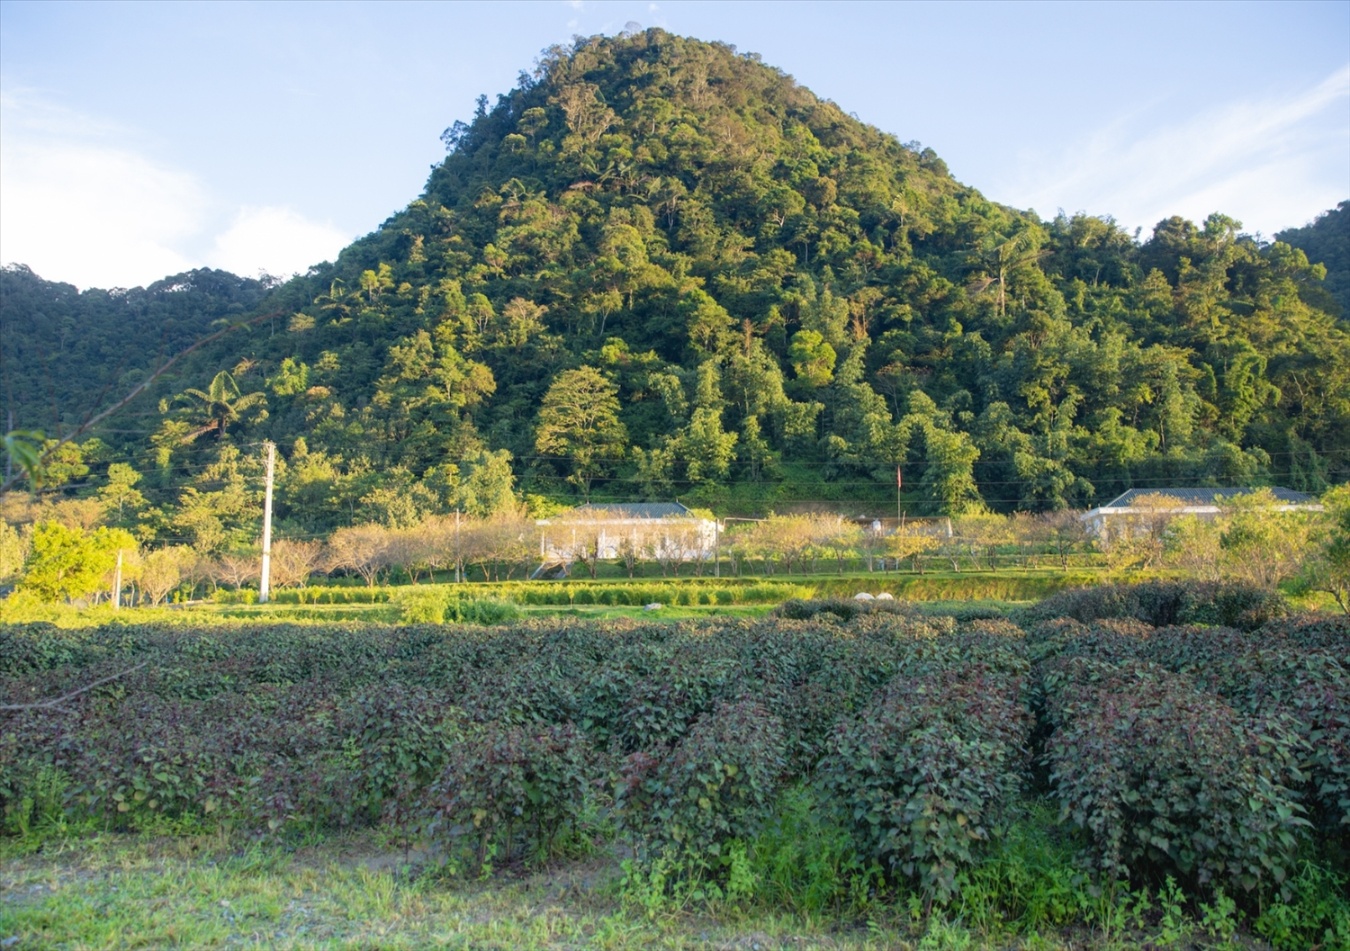 Trồng dược liệu dưới tán rừng ở Mường Lống (Kỳ Sơn).